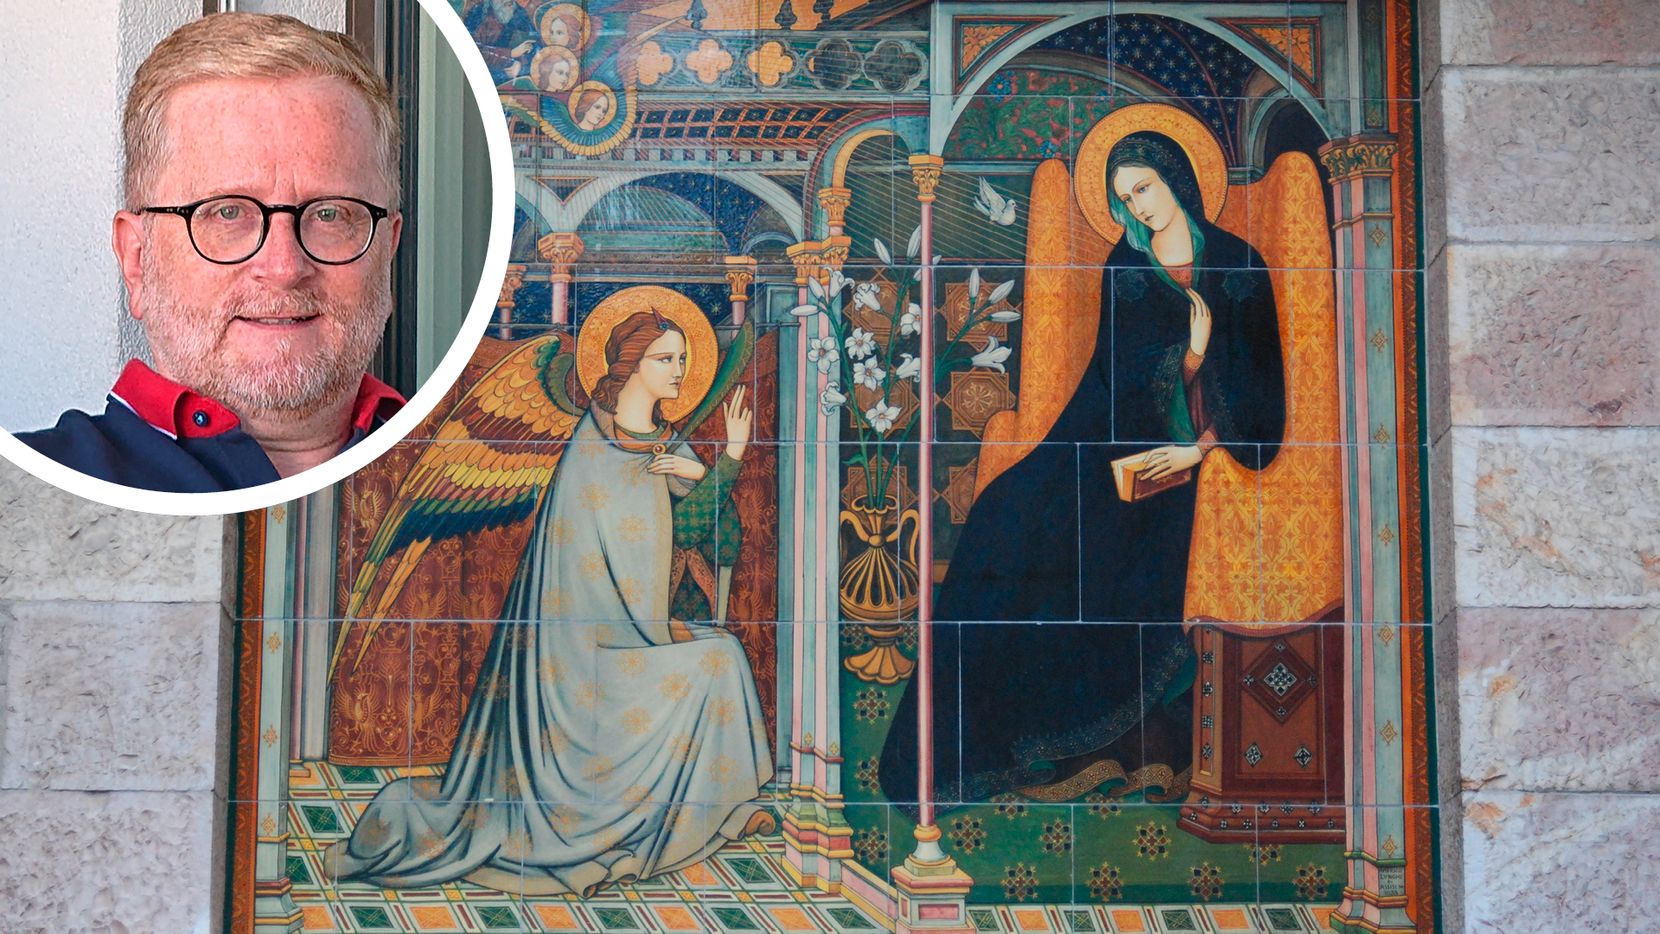 Man sieht ein Gemälde mit einem Engel und einer Frau. In einem Kreis links oben sieht man den Kopf eines Mannes.